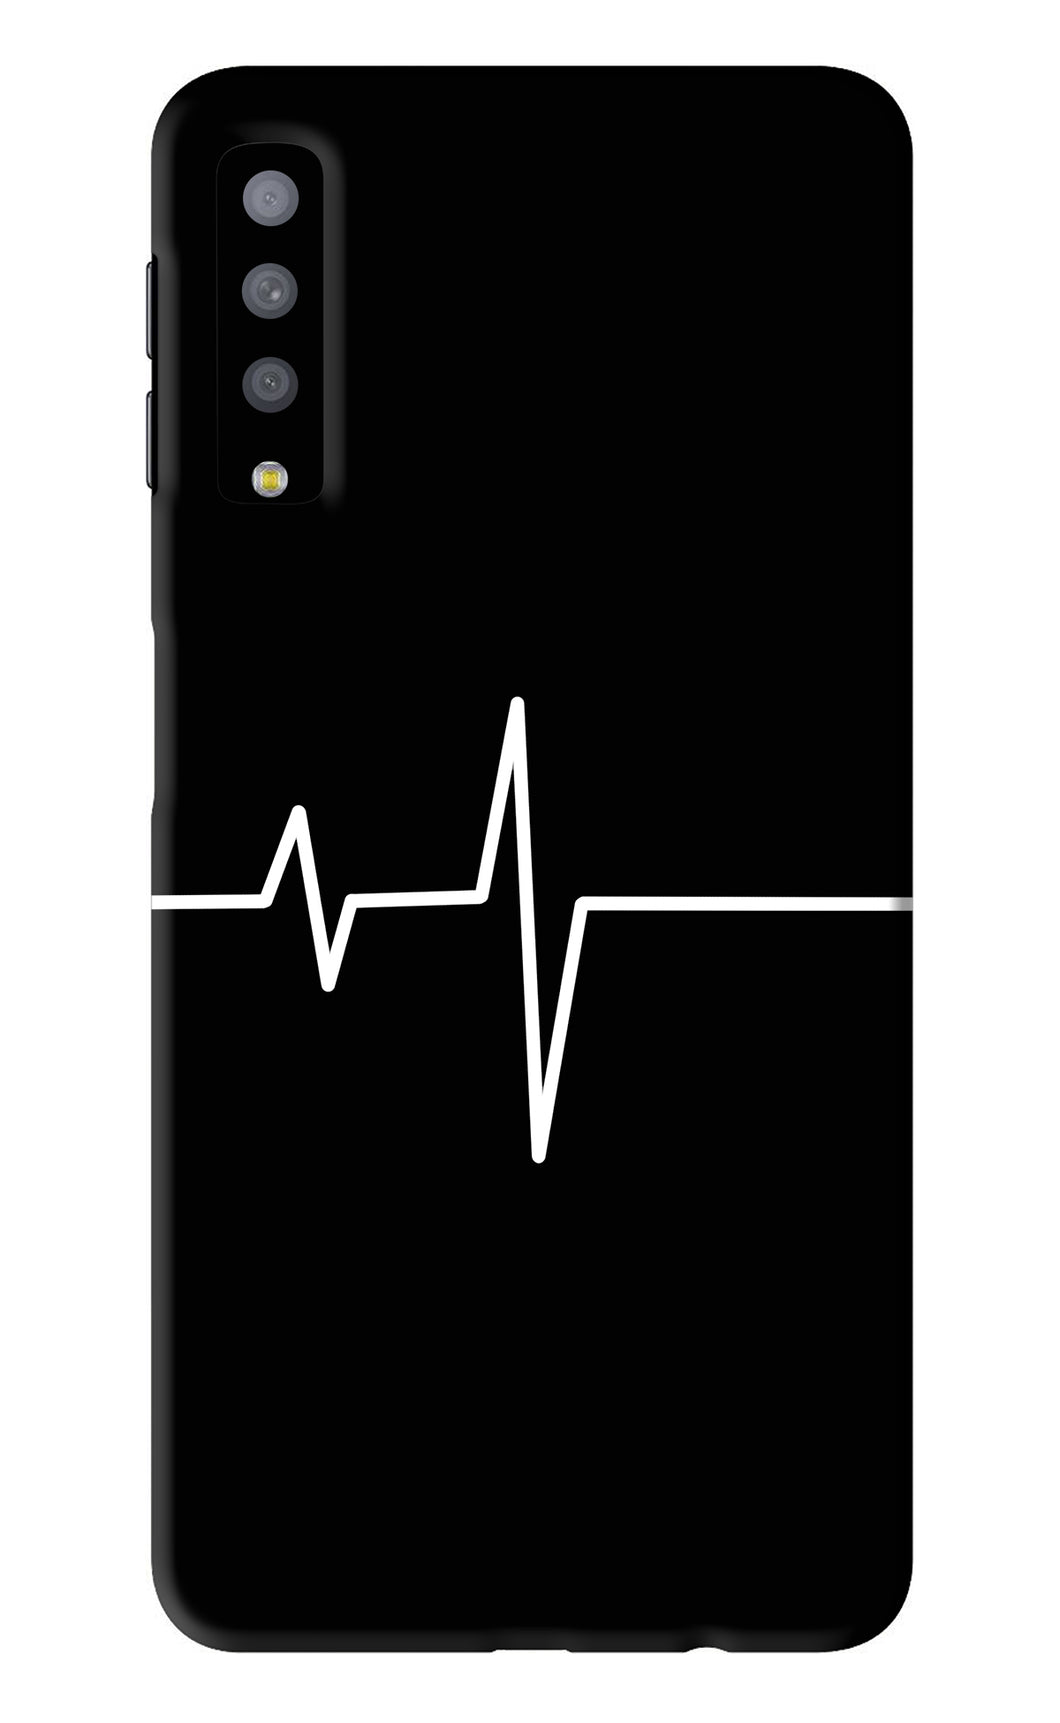 Heart Beats Samsung Galaxy A7 2018 Back Skin Wrap